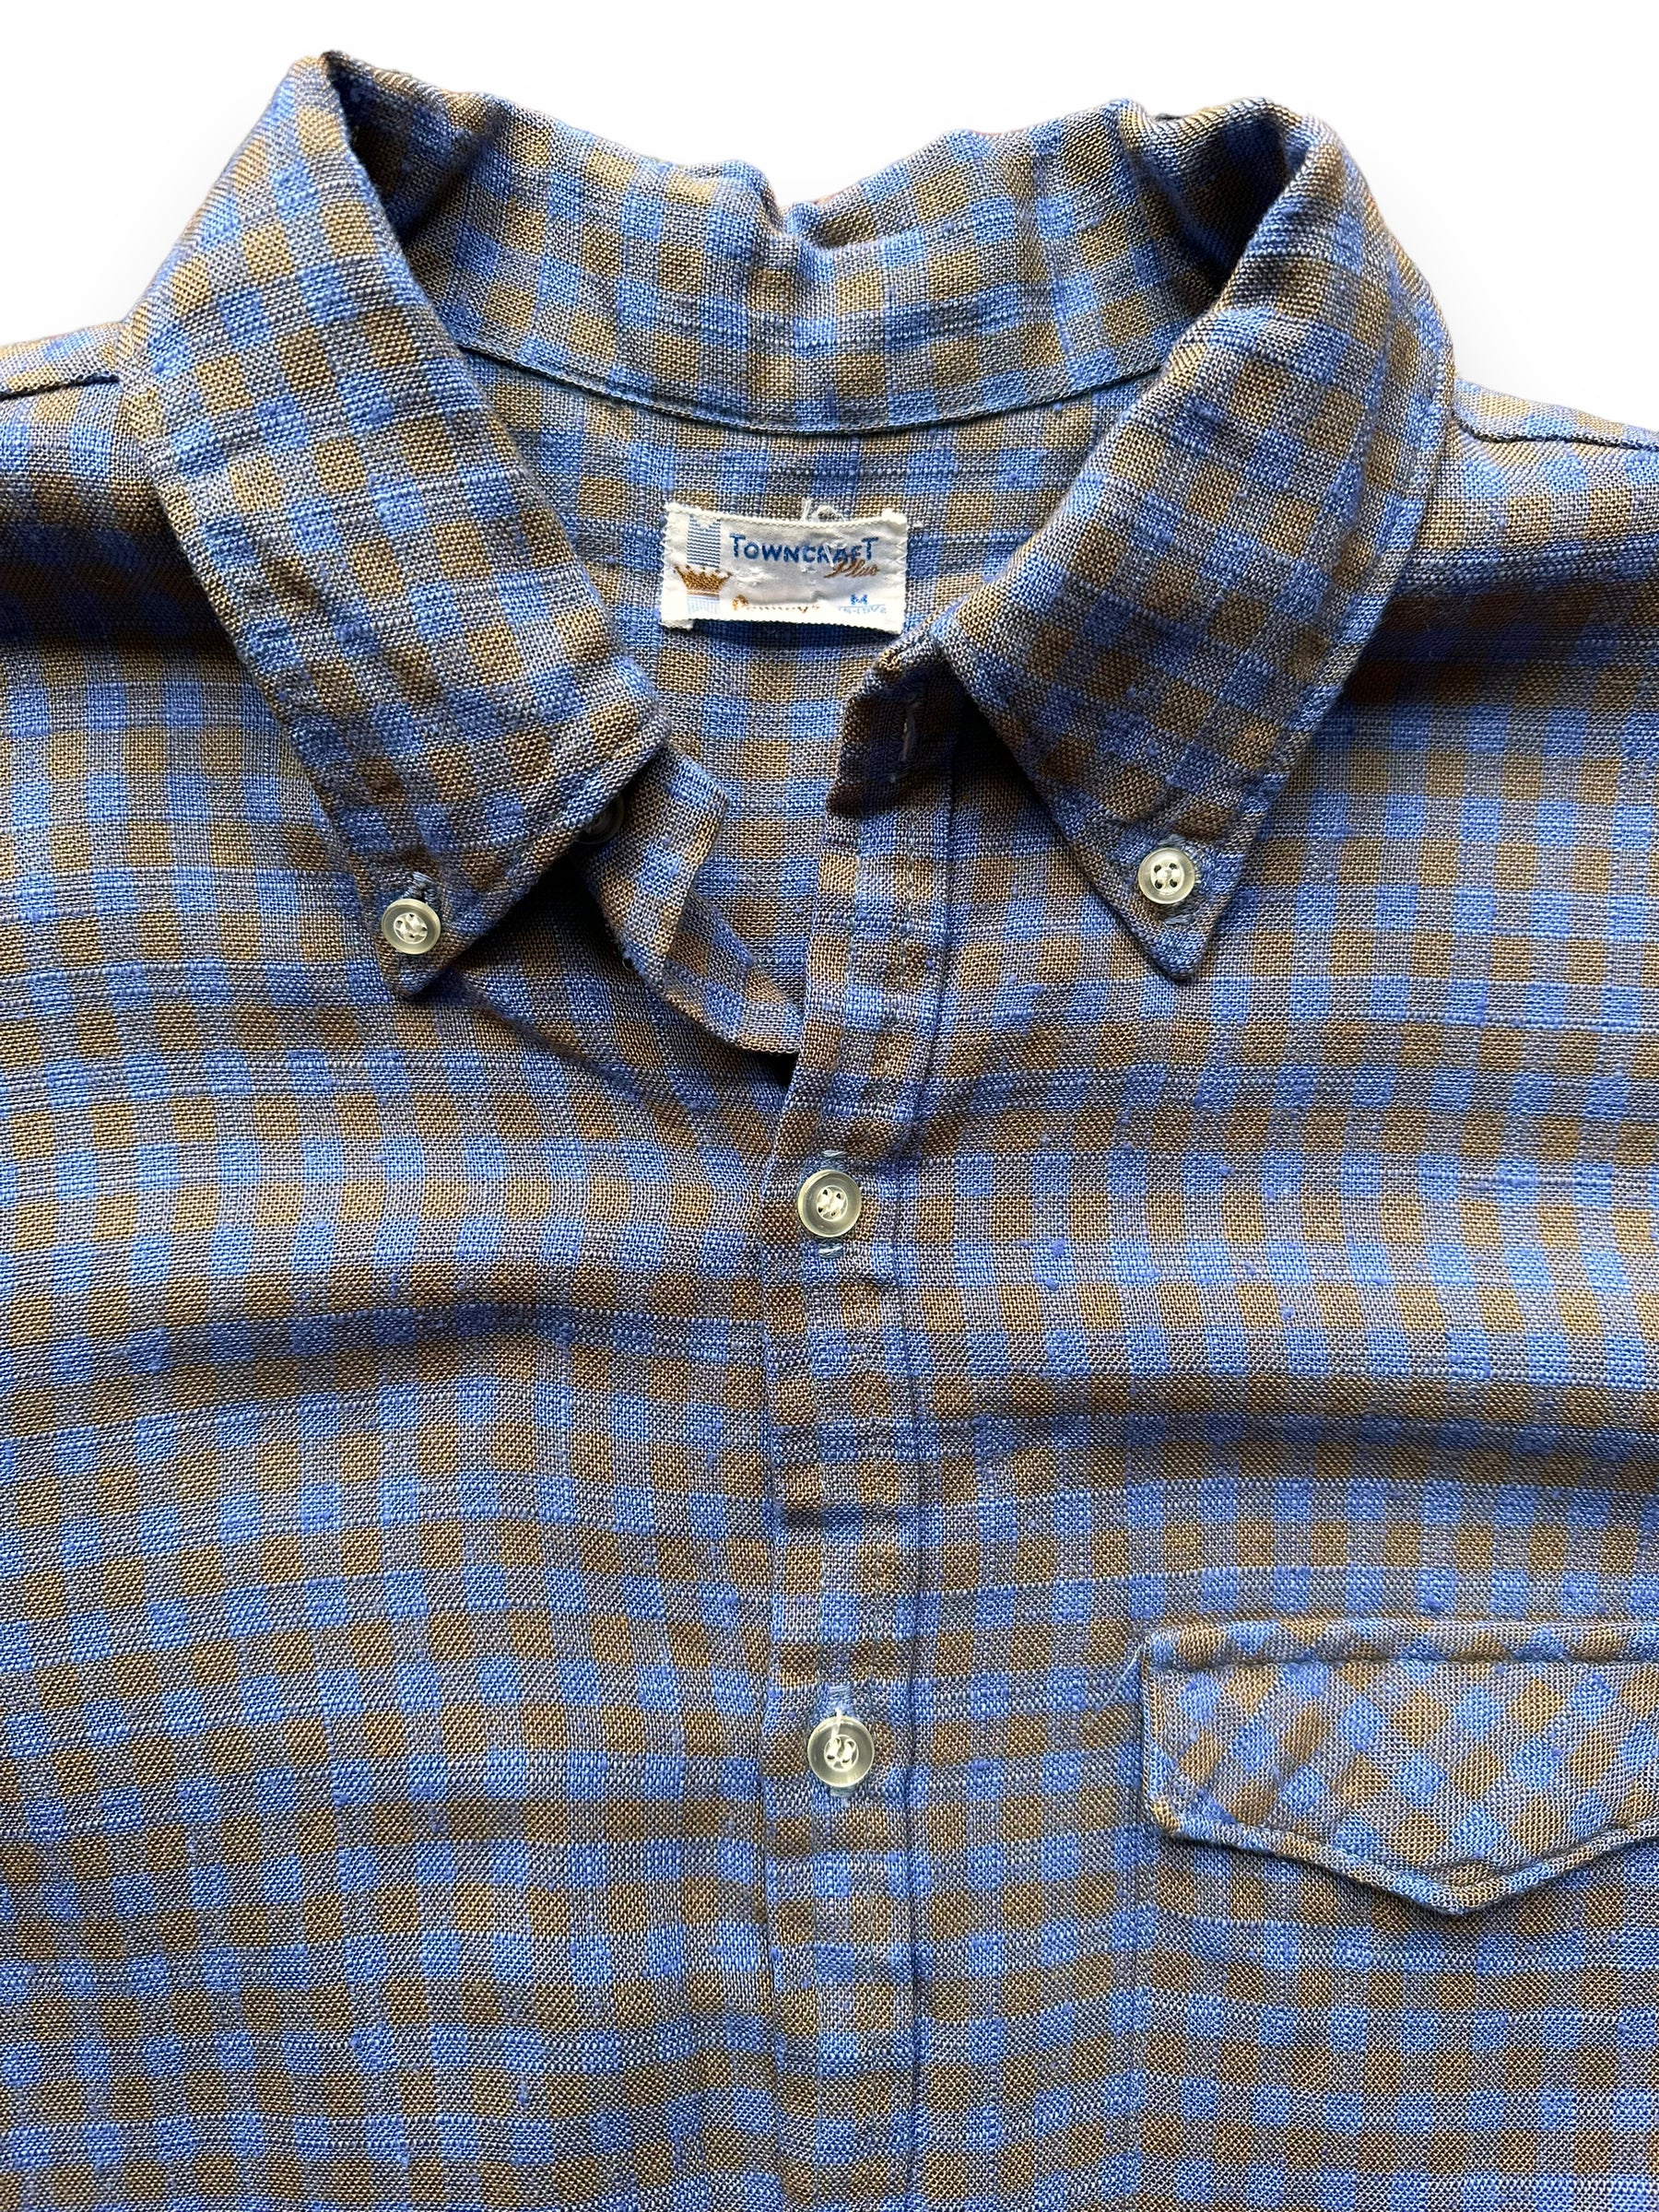 30%OFFVintage TOWN CRAFT work shirt 40s　jc pennys ペニーズ　タウンクラフト　ワークシャツ　ヤシの木タグ　ビンテージ Sサイズ